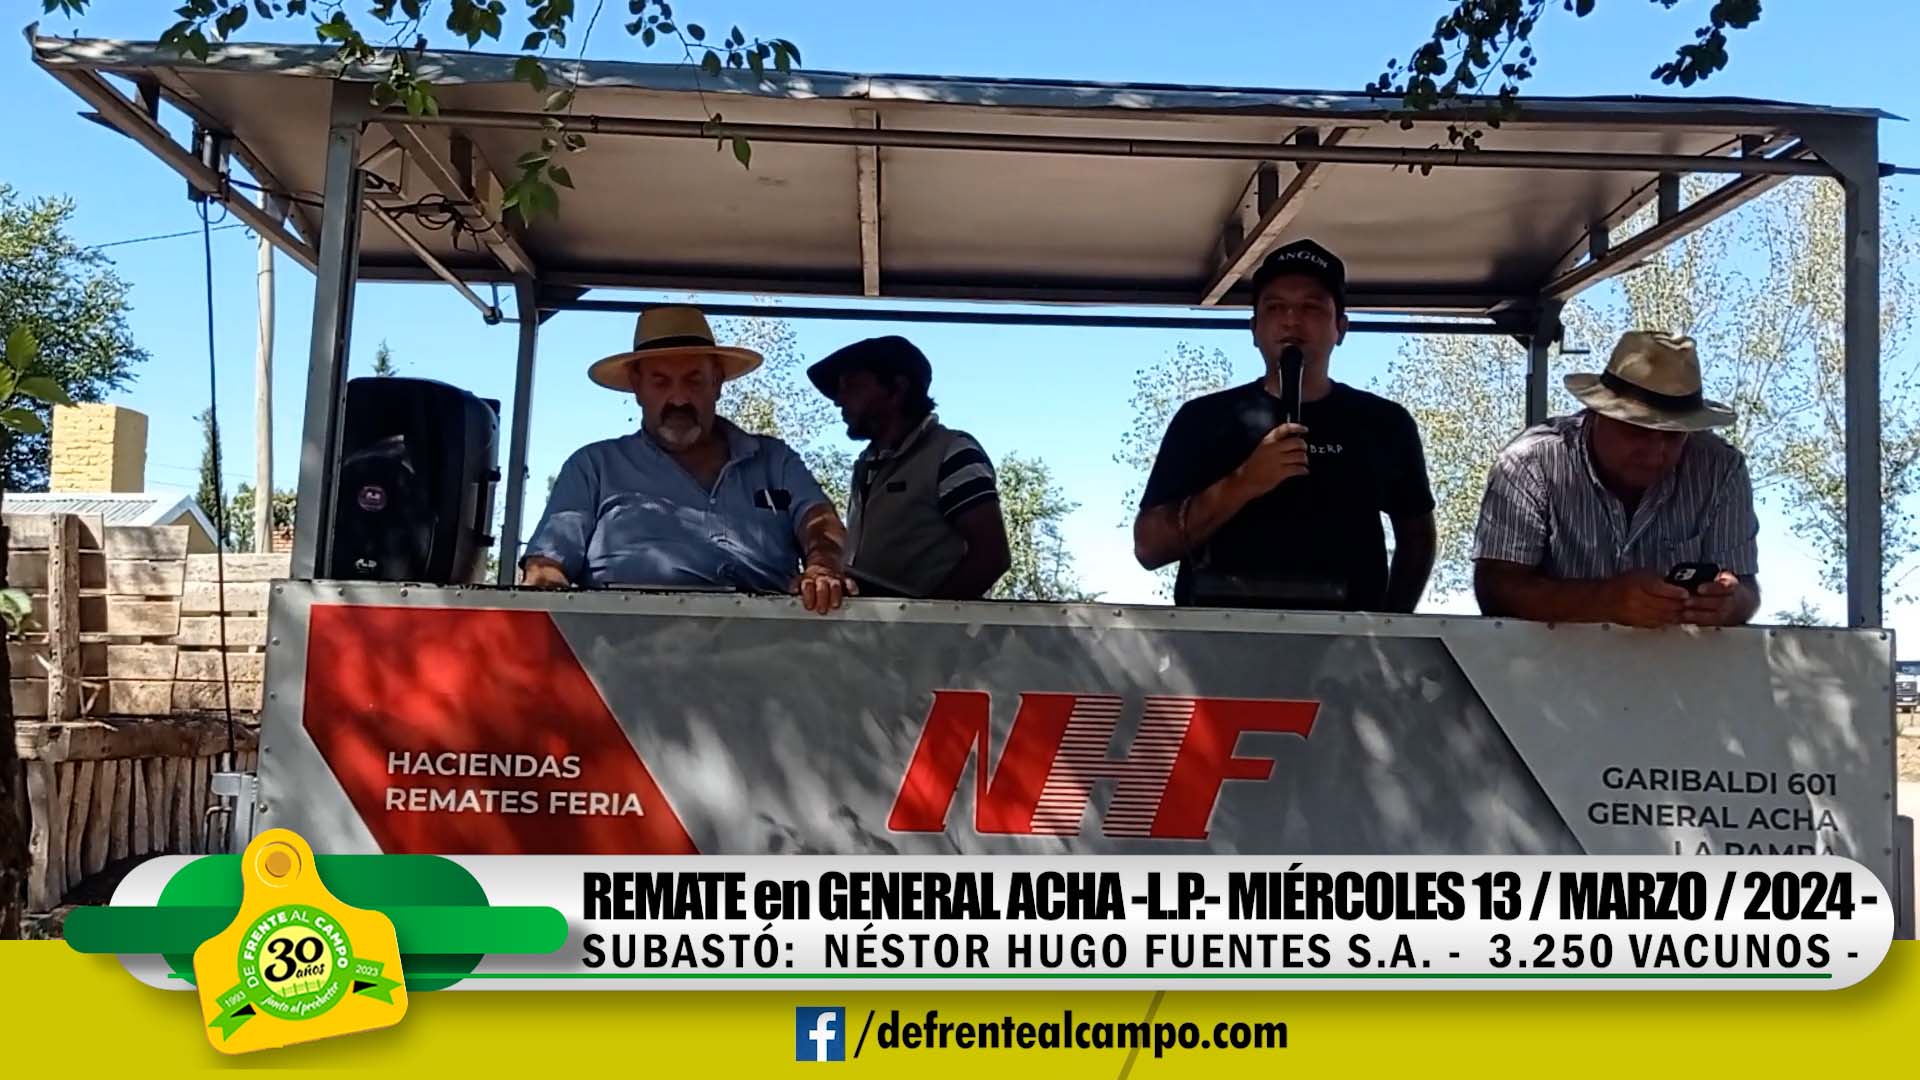 Remate Feria de Néstor Hugo Fuentes S.A. – General Acha -L.P. | 13-03-2024